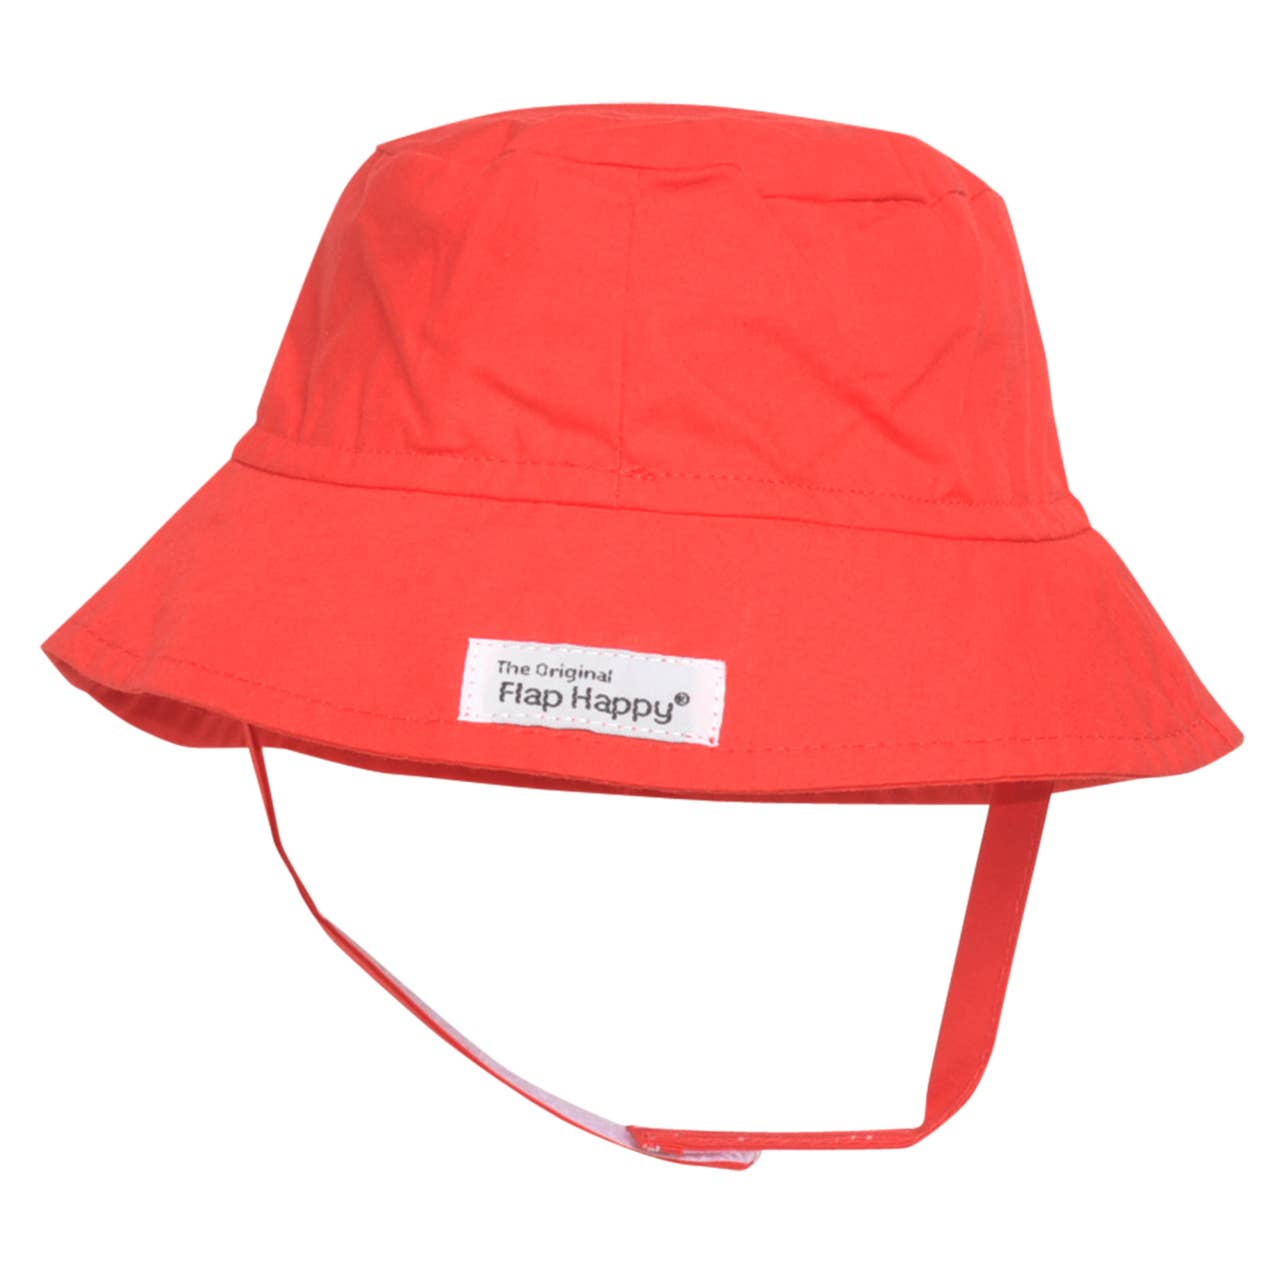 Kids Red Flap Happy Bucket Sun Hat